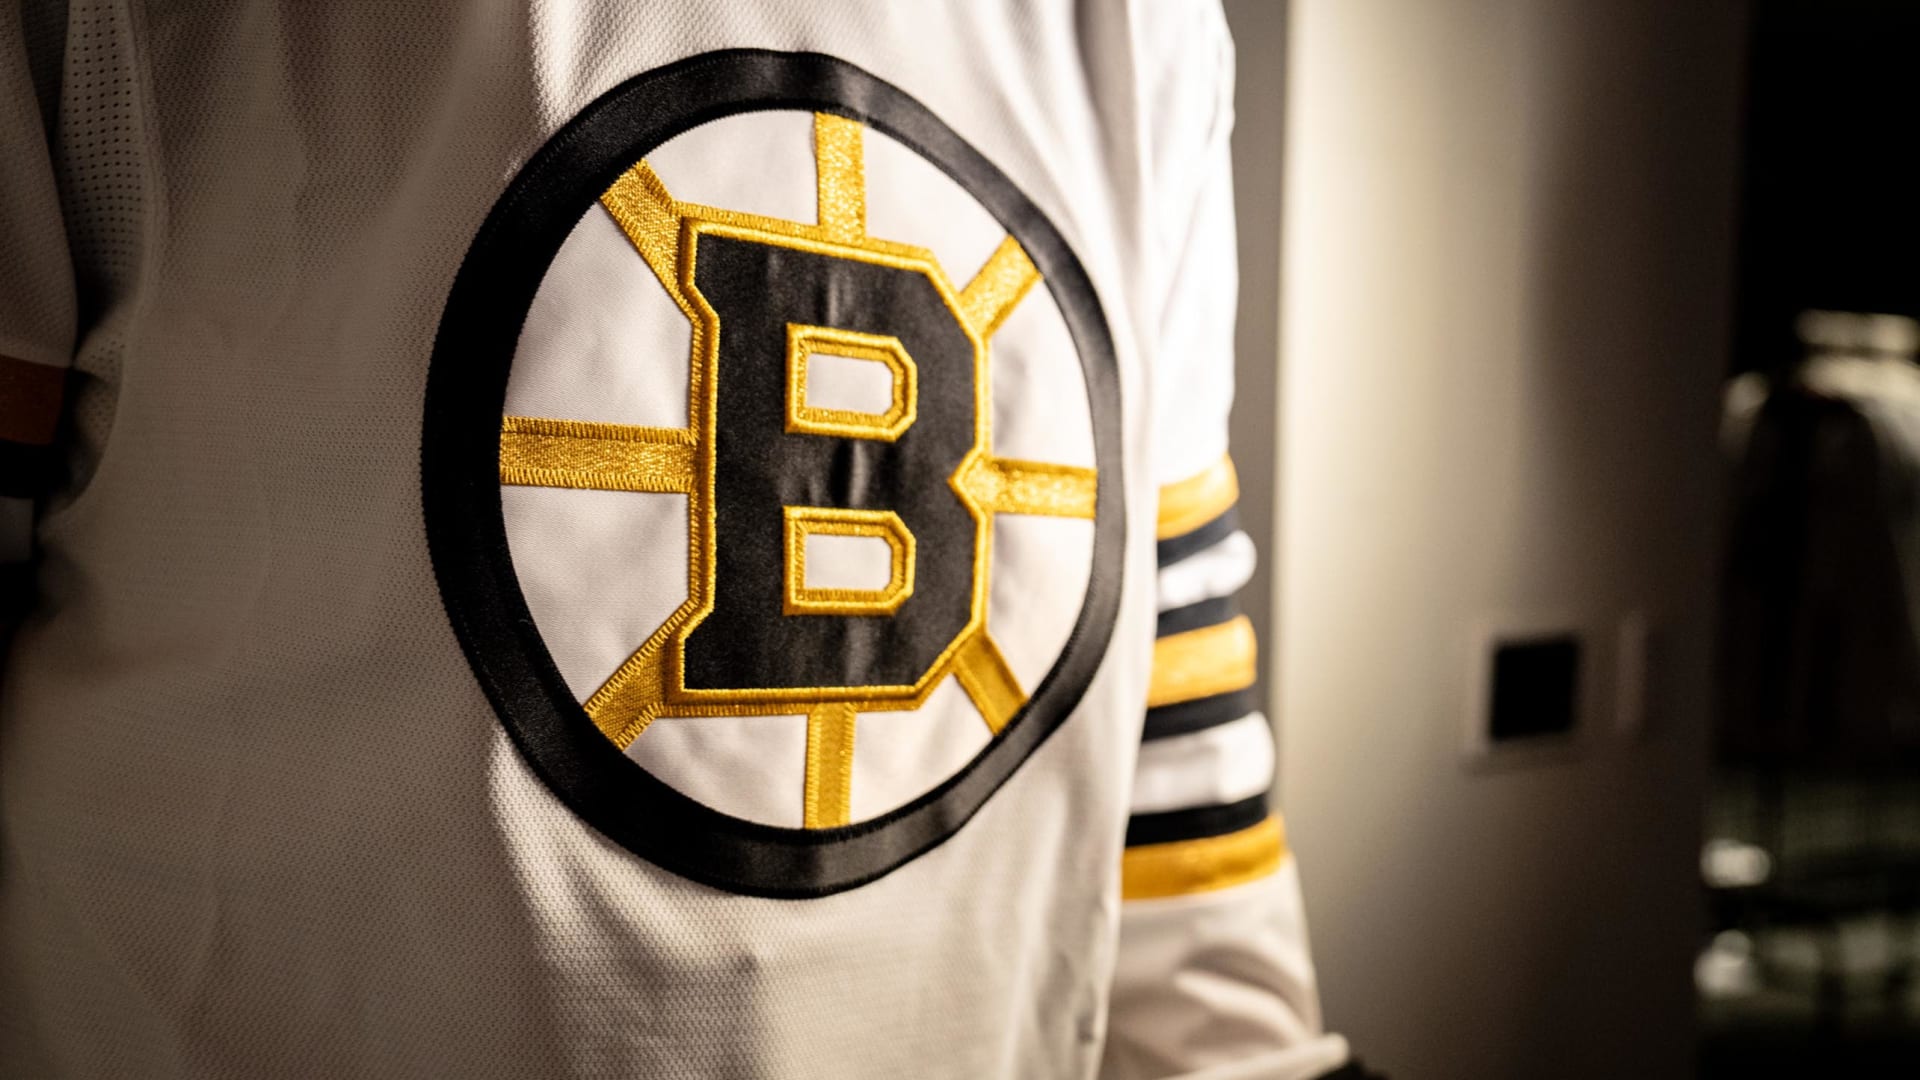 NEW* Boston Bruins Centennial Jerseys (Home, Away, Alternate